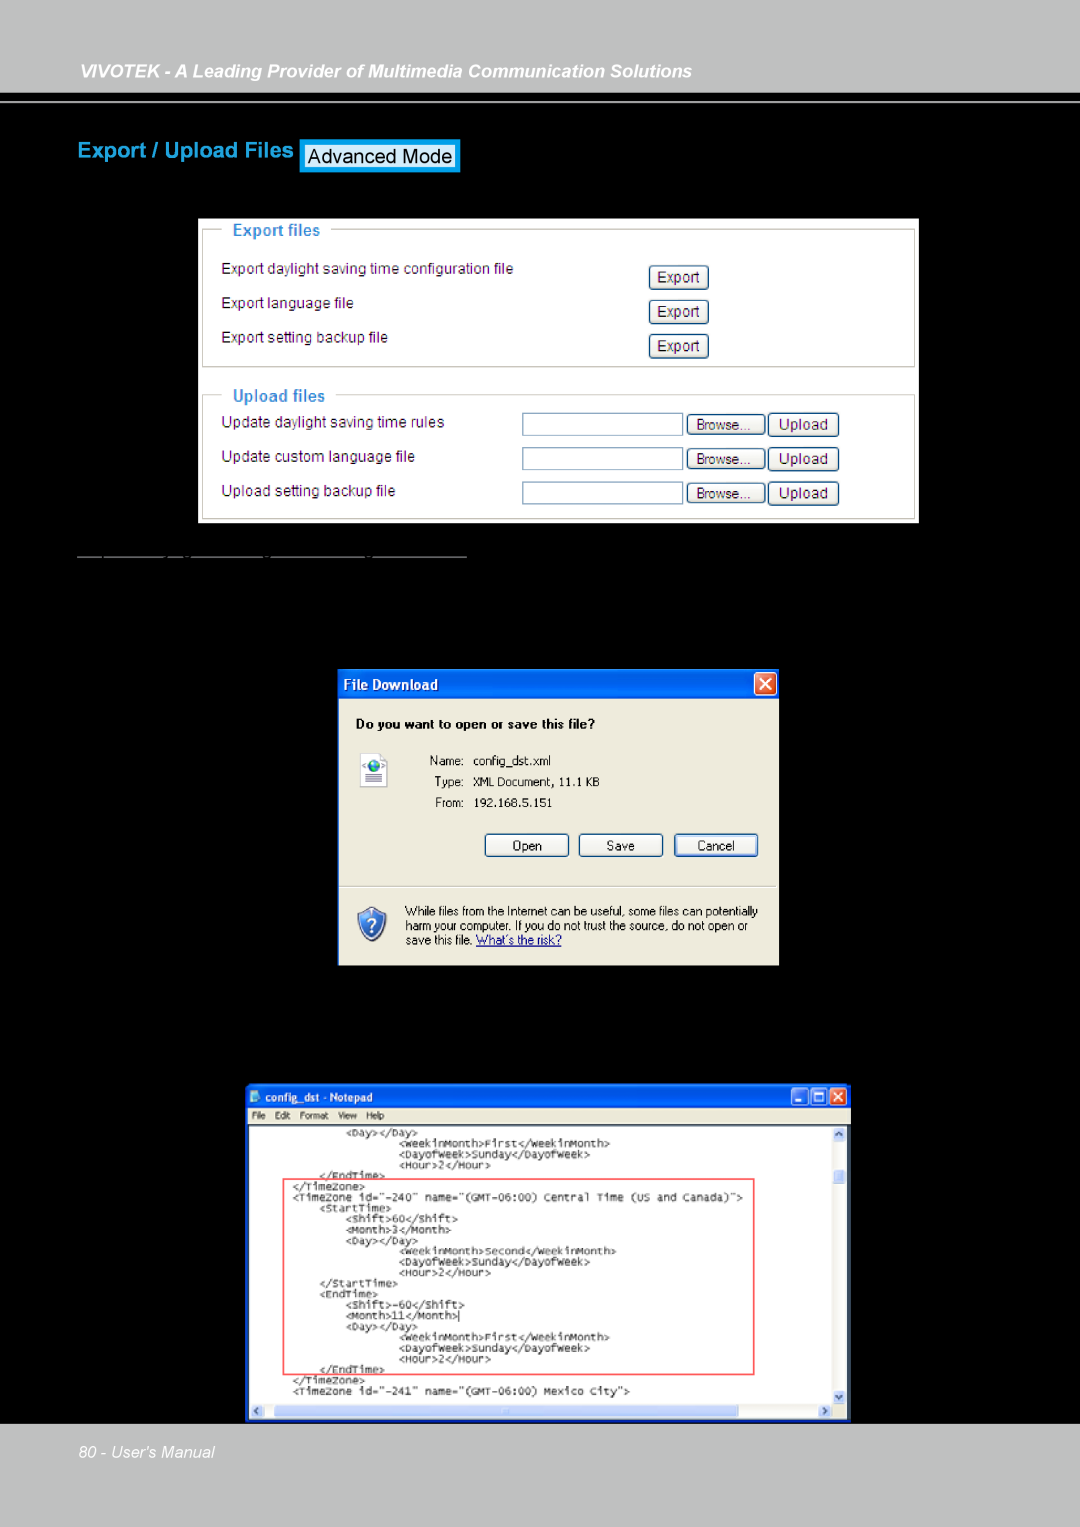 Vivotek IP7130 manual Export / Upload Files, Users Manual 